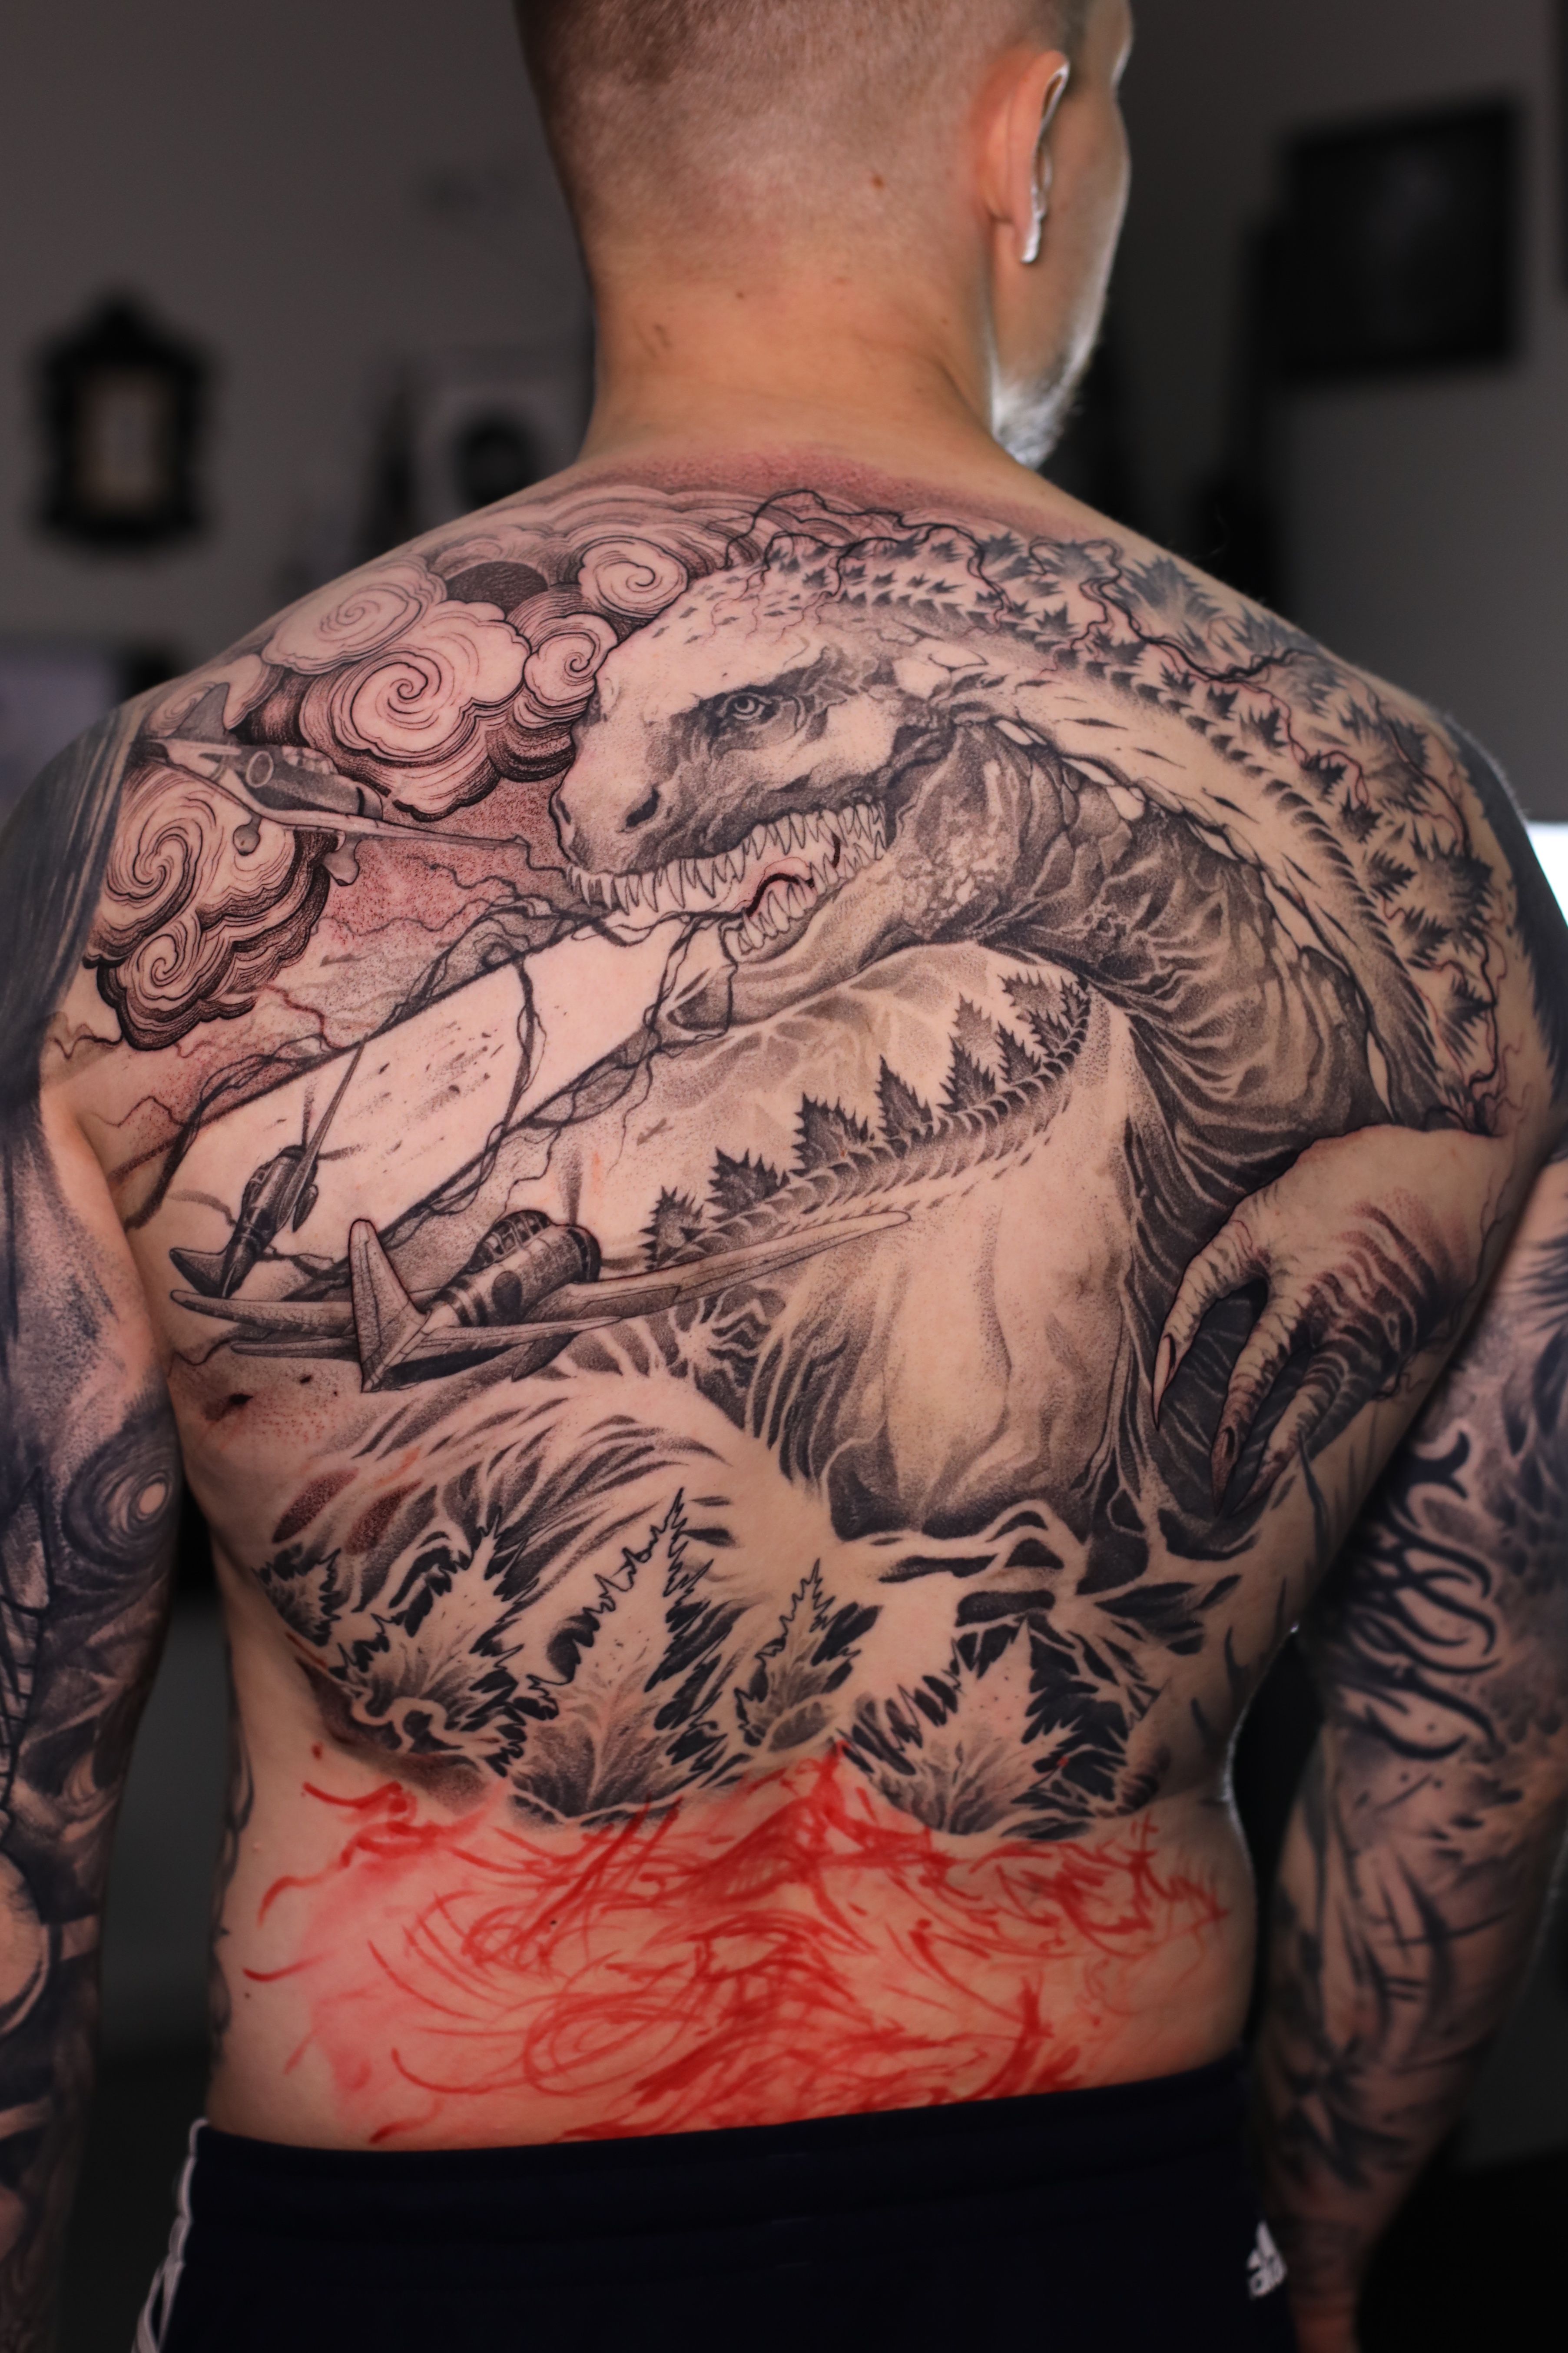 ms. monster | Tattoos by Aaron Broke